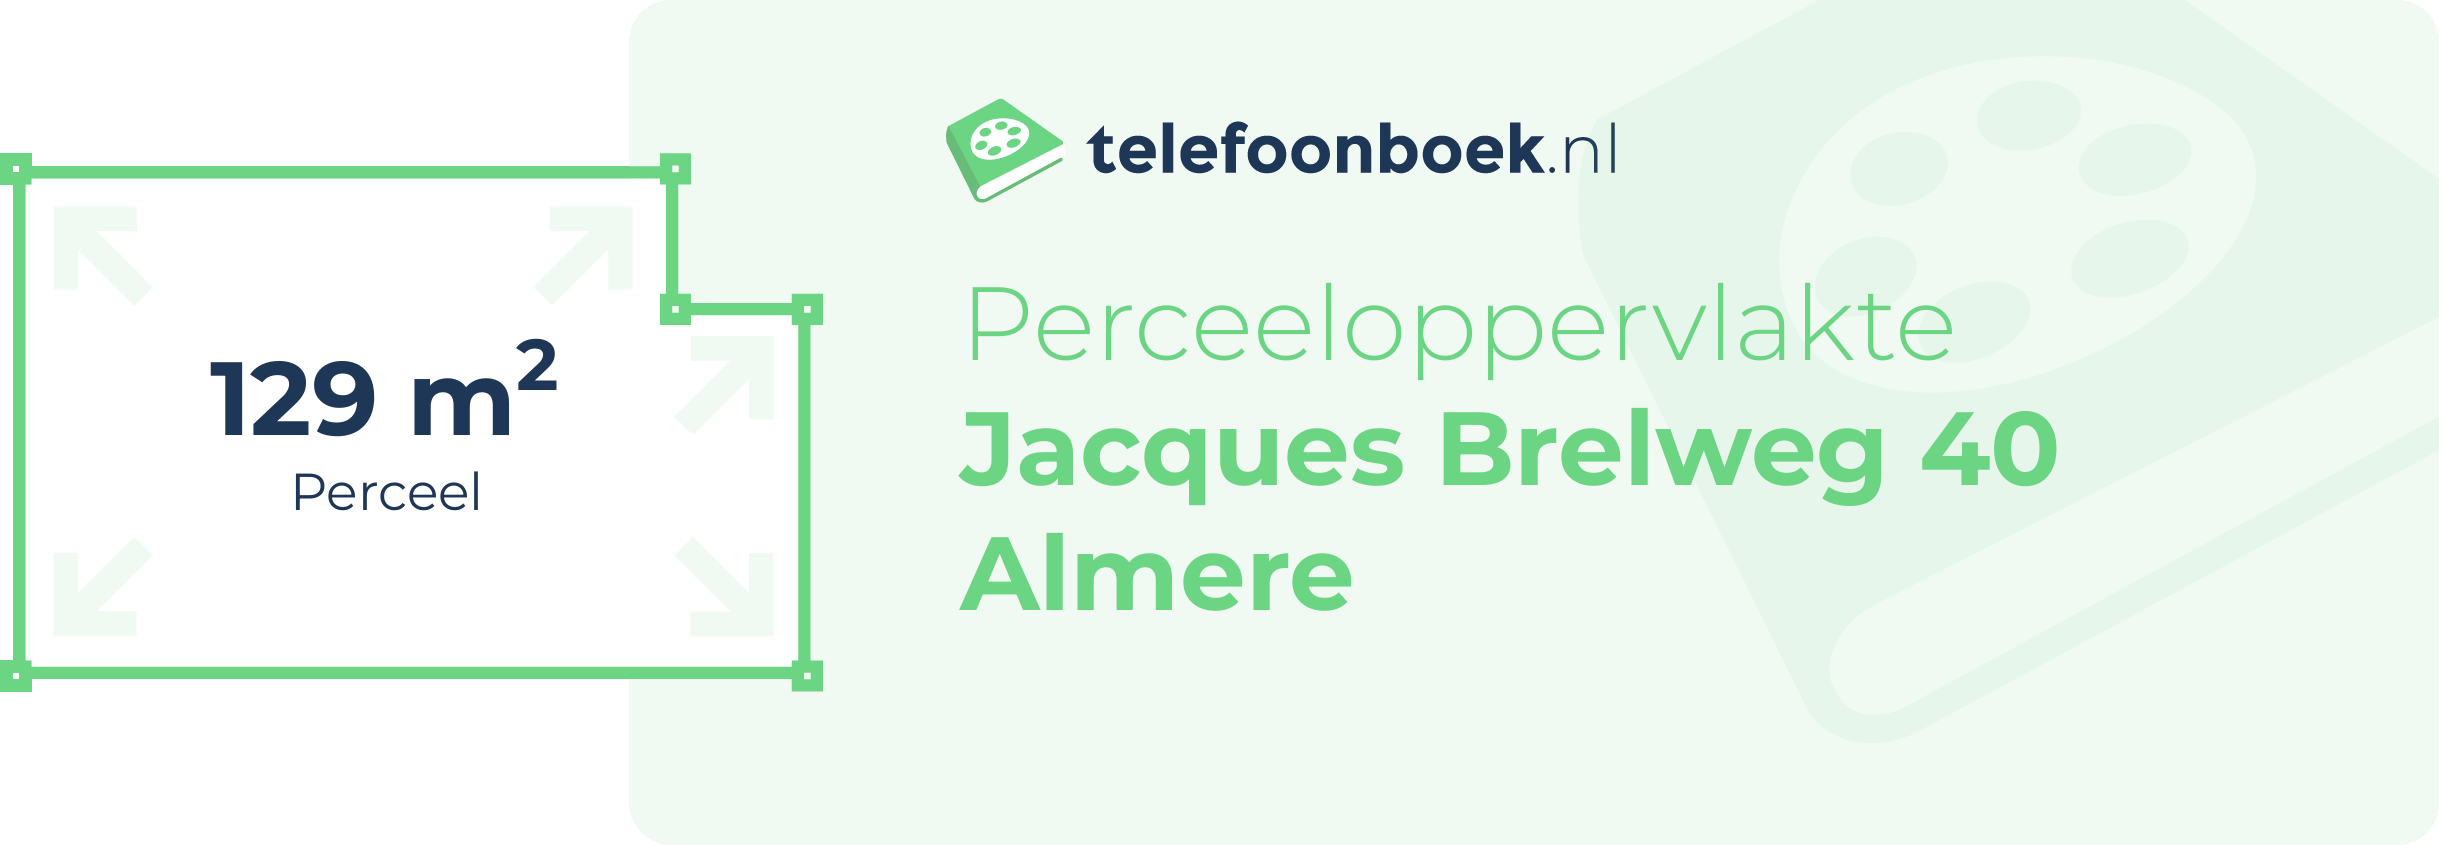 Perceeloppervlakte Jacques Brelweg 40 Almere